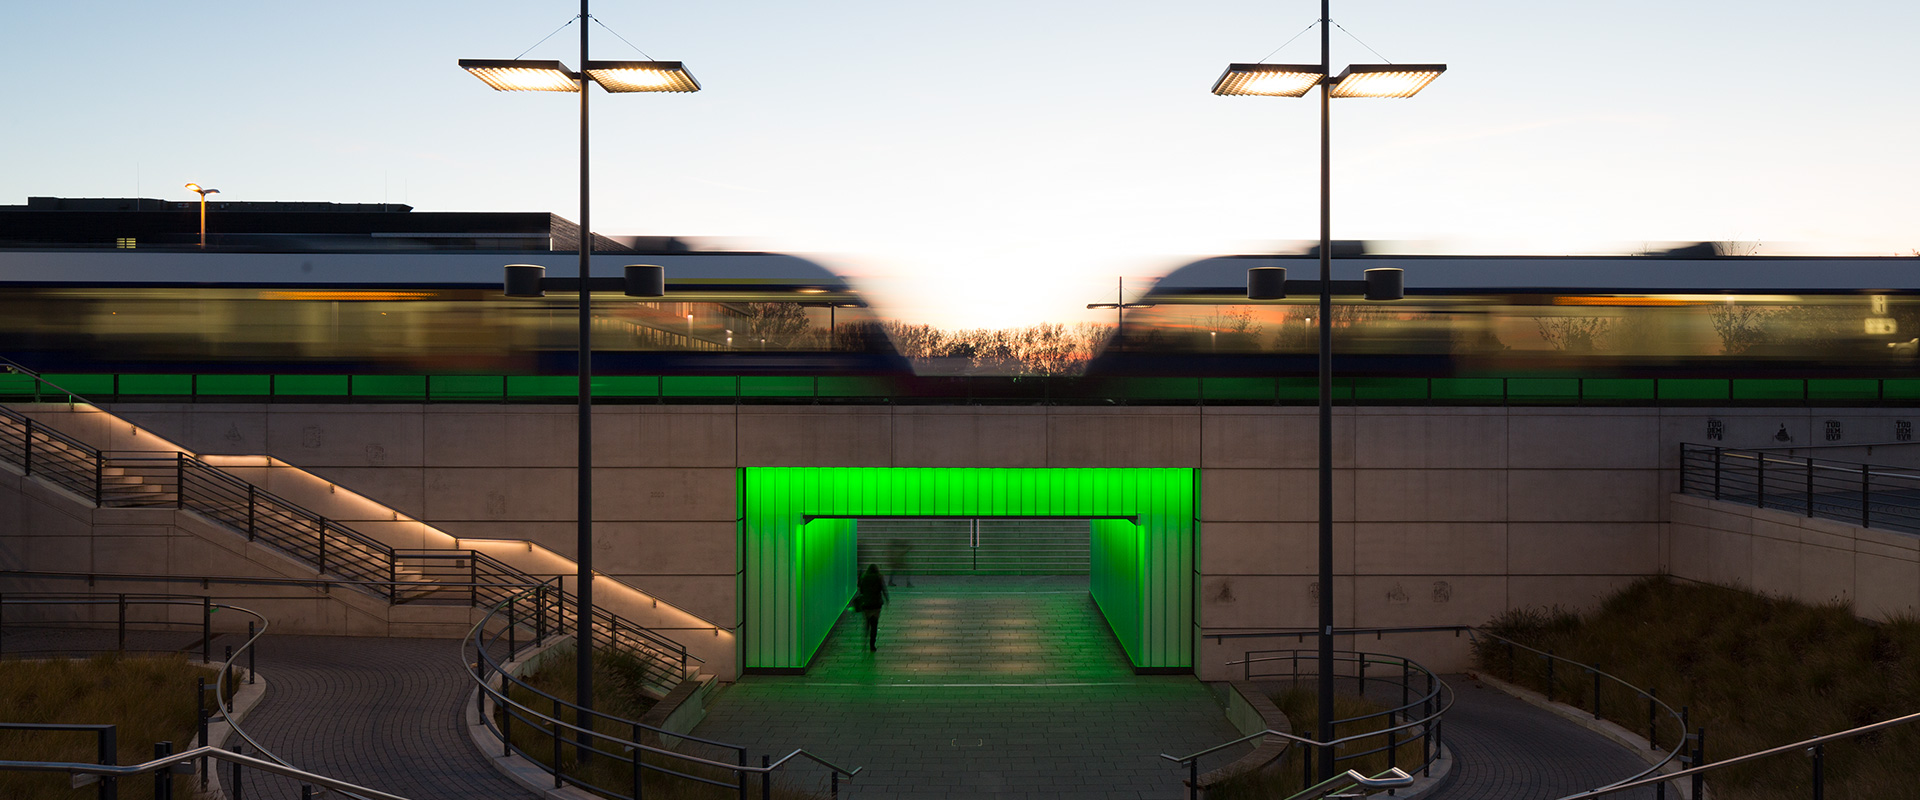 Grün illuminierte Fußgängerunterführung am Bahnhof